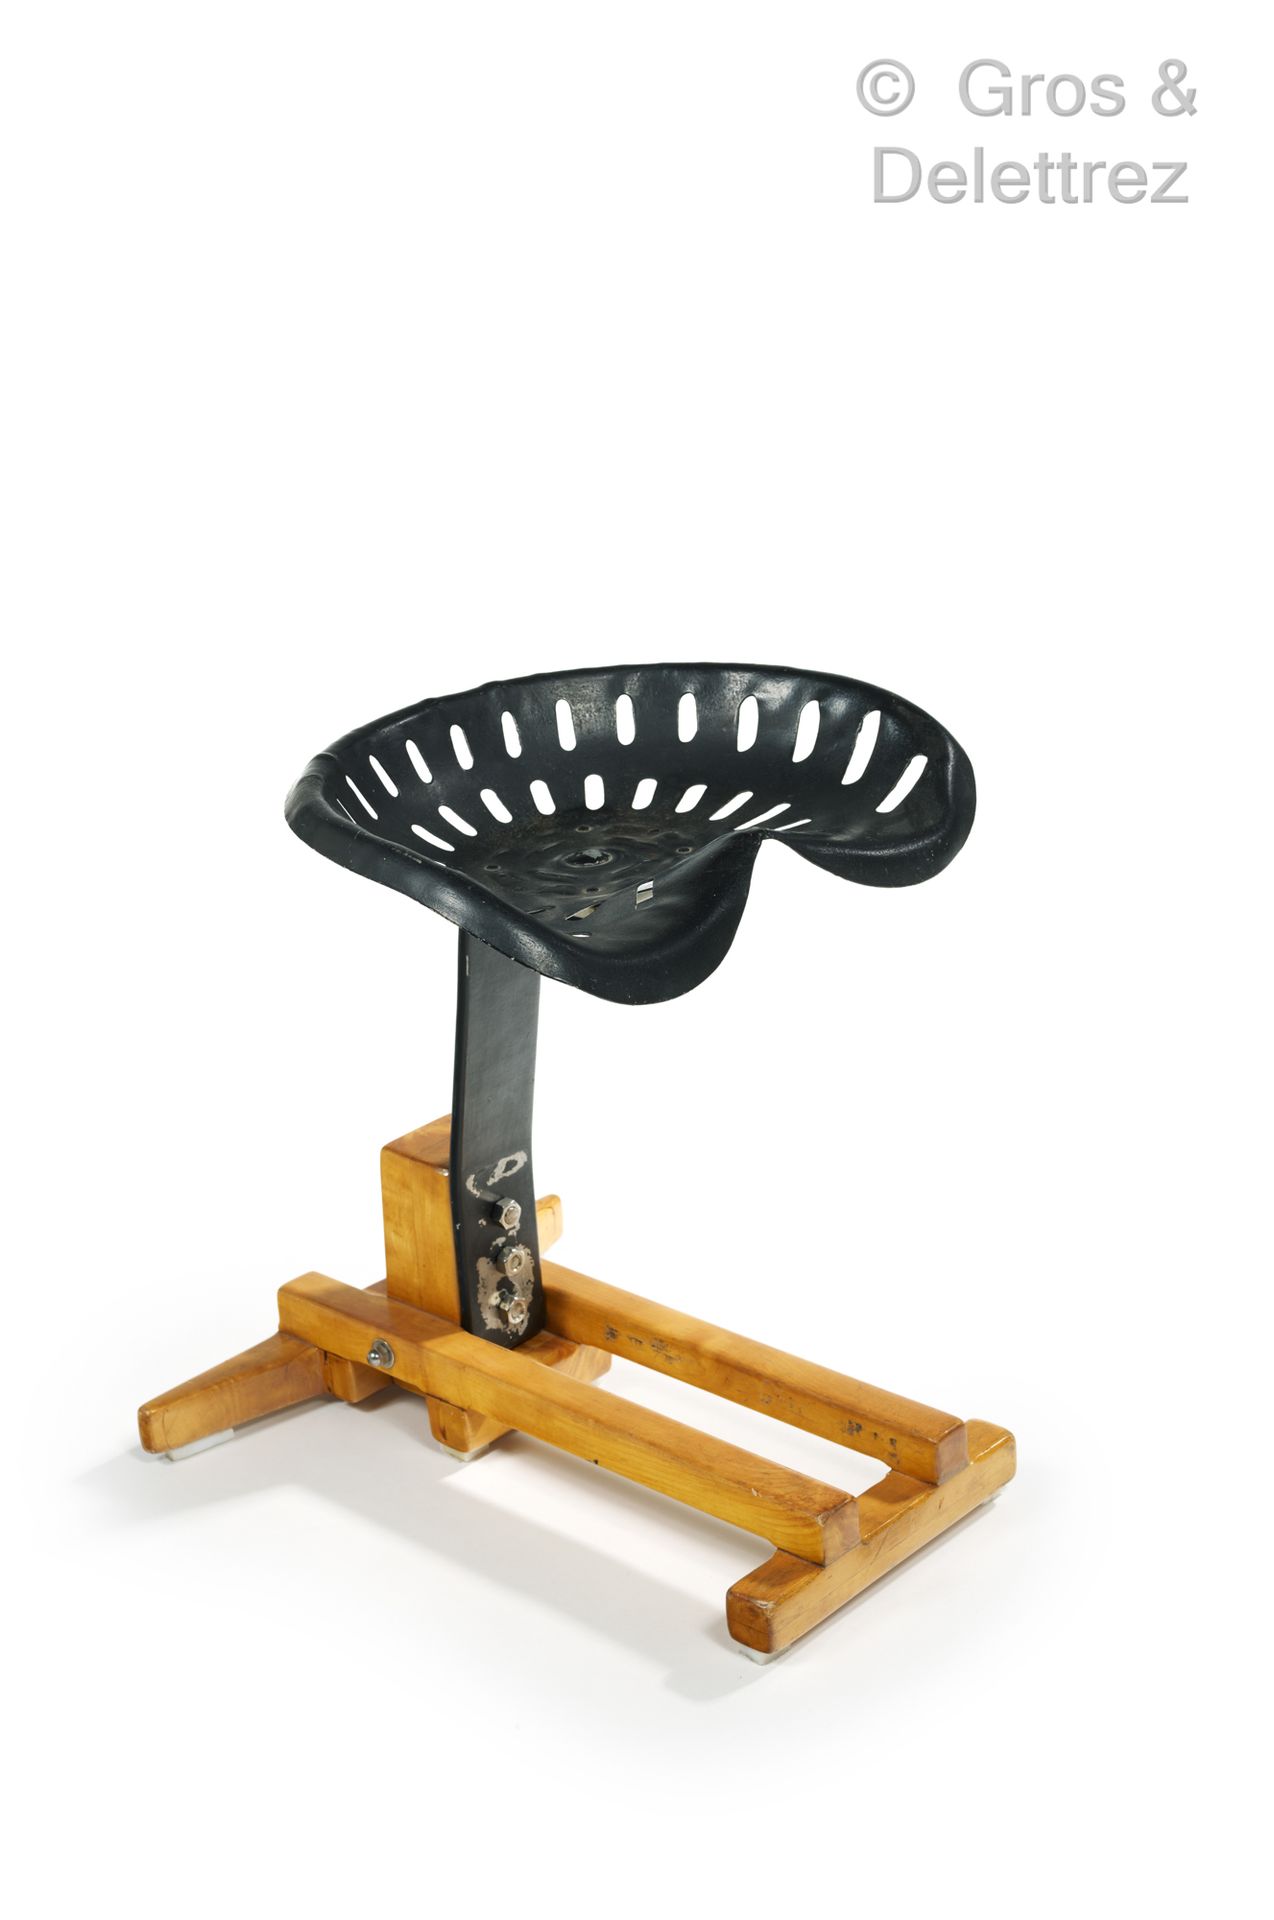 Null 现代工作

拖拉机 "凳子，黑色漆面镂空金属座椅，松木底座

高：53厘米，宽：45厘米，深：51厘米